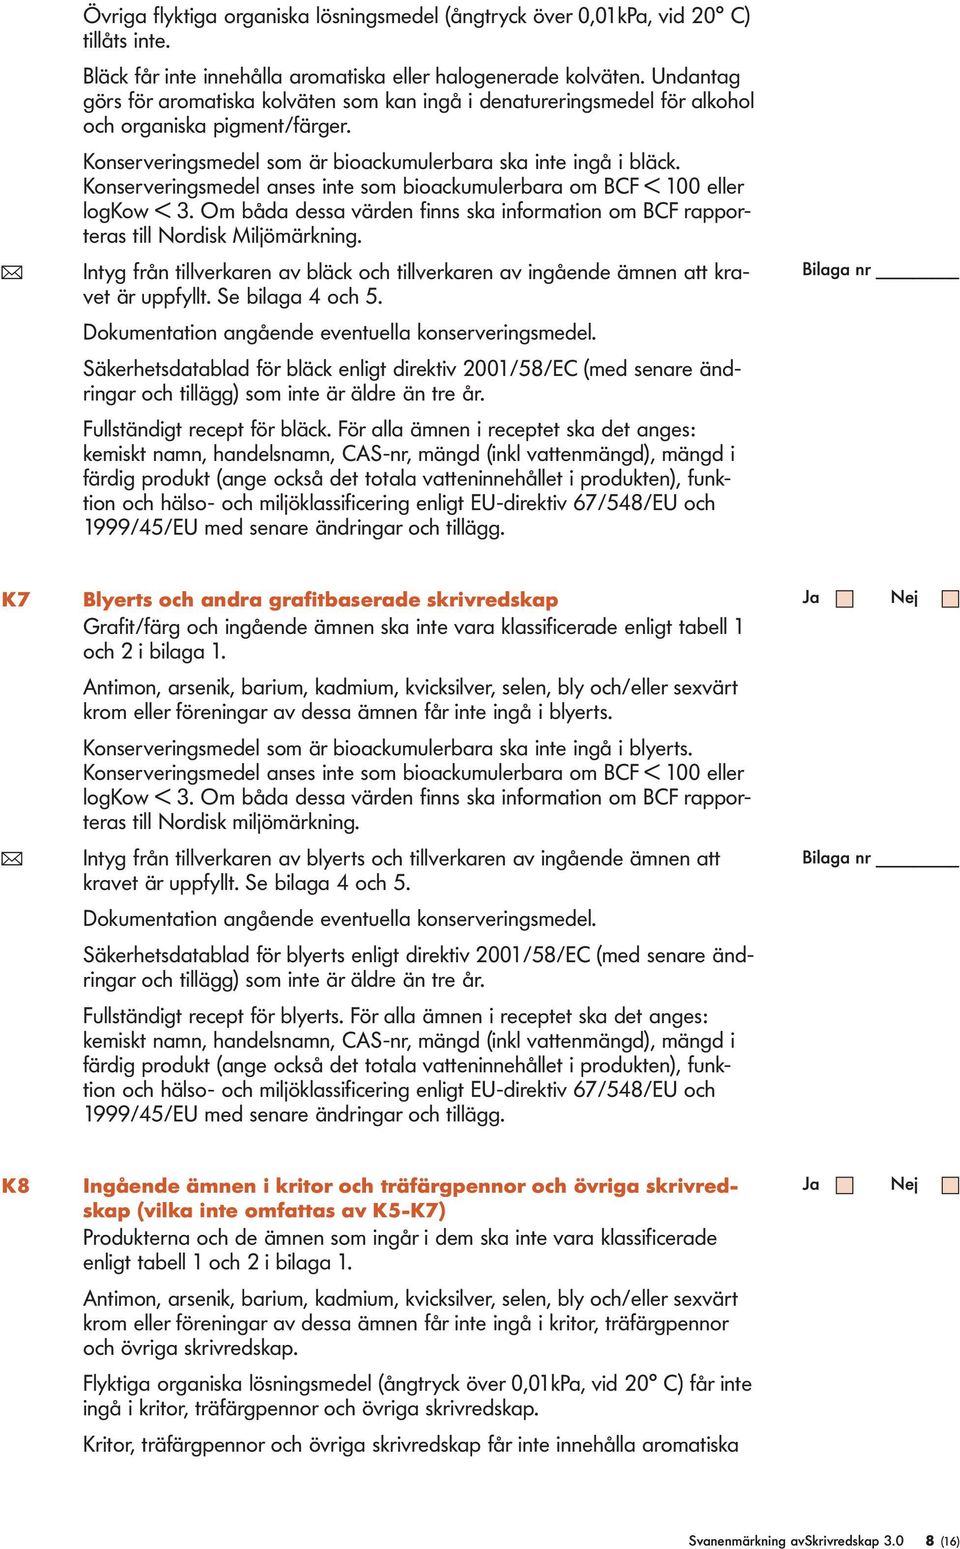 Konserveringsmede anses inte som bioackumuerbara om BCF < 100 eer ogkow < 3. Om båda dessa värden finns ska information om BCF rapporteras ti Nordisk Mijömärkning.